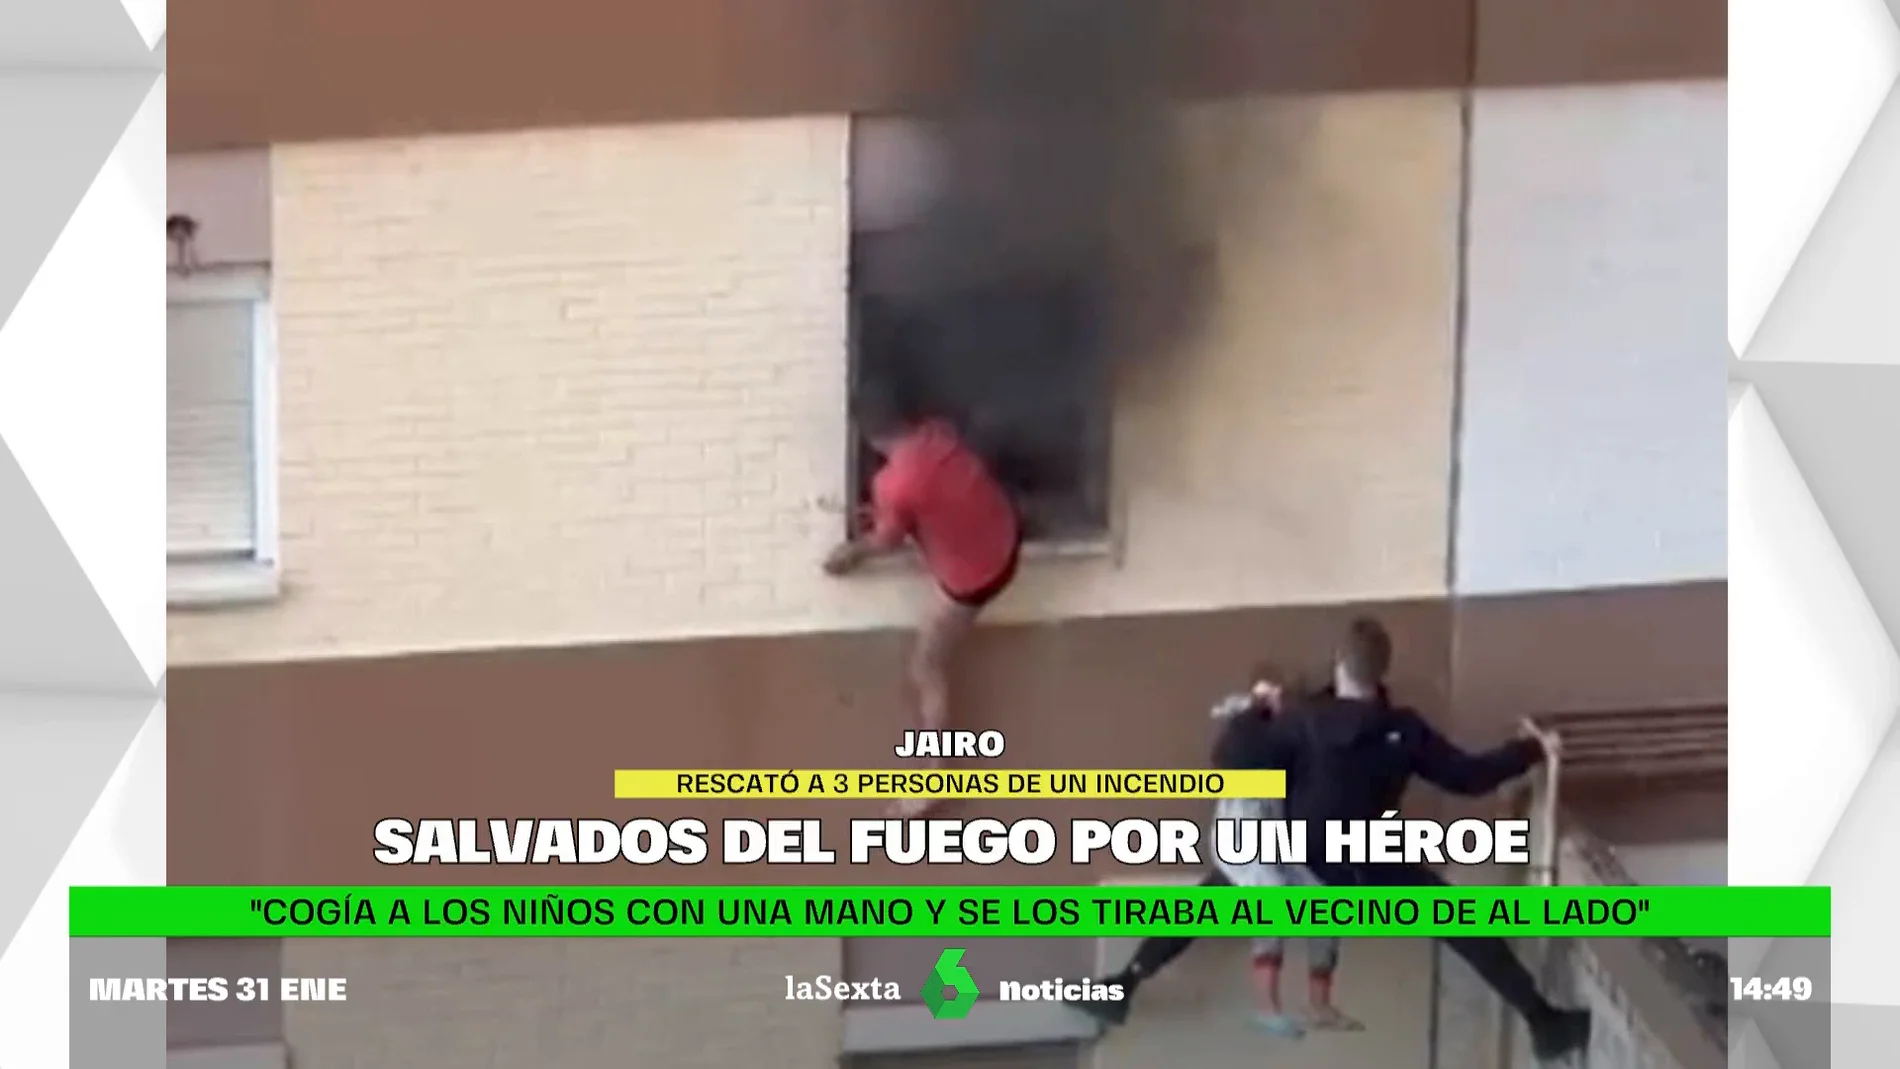 Jairo, el héroe que salvó a una familia del fuego escalando un edificio: "Me decía que se quemaba, que se tiraba"